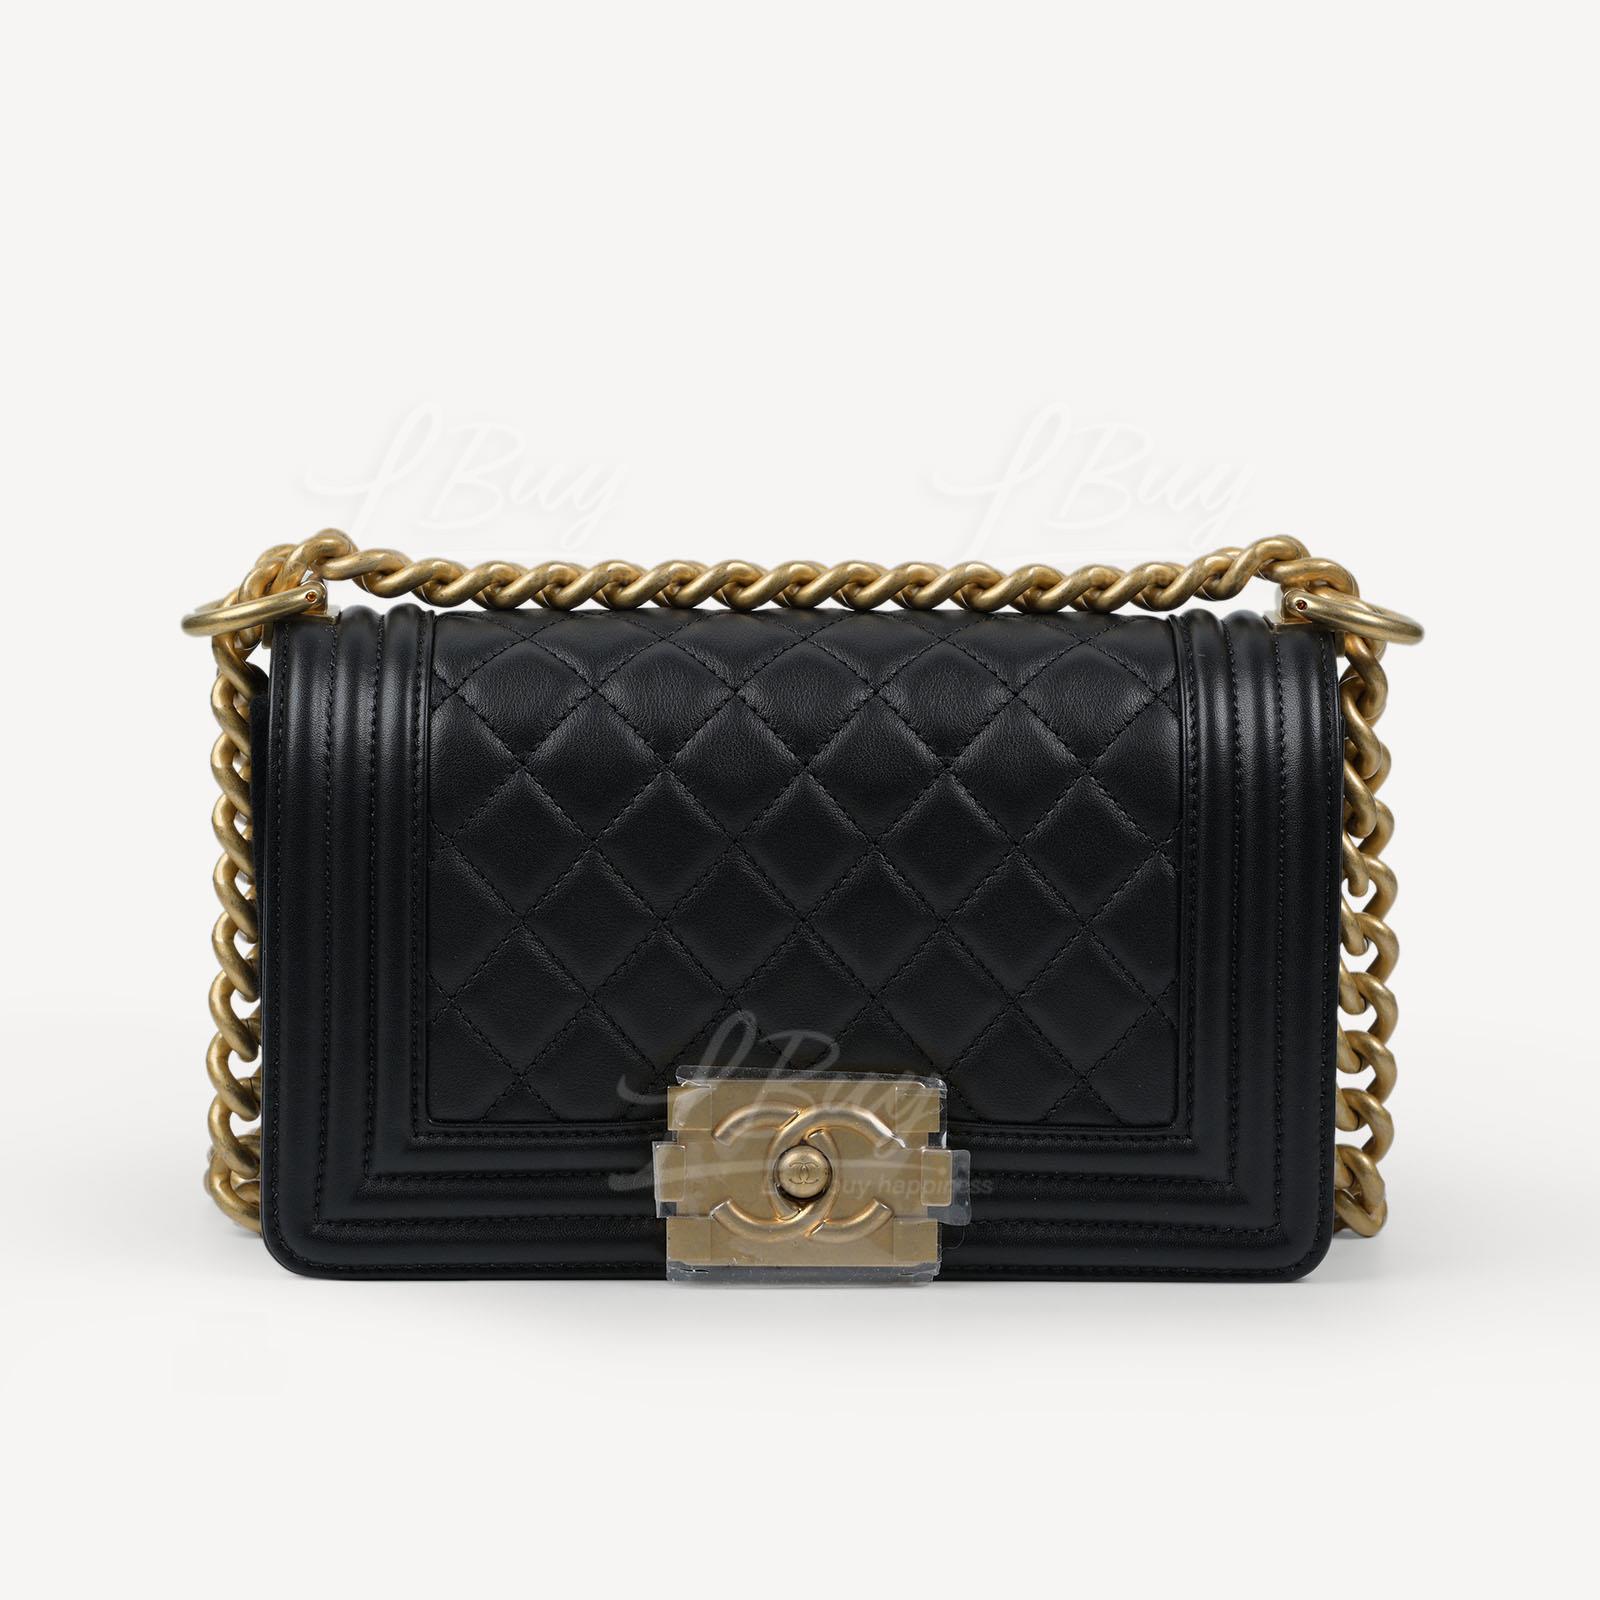 Chanel Boy Calfskin Small Handbag Gold CC Logo A67085